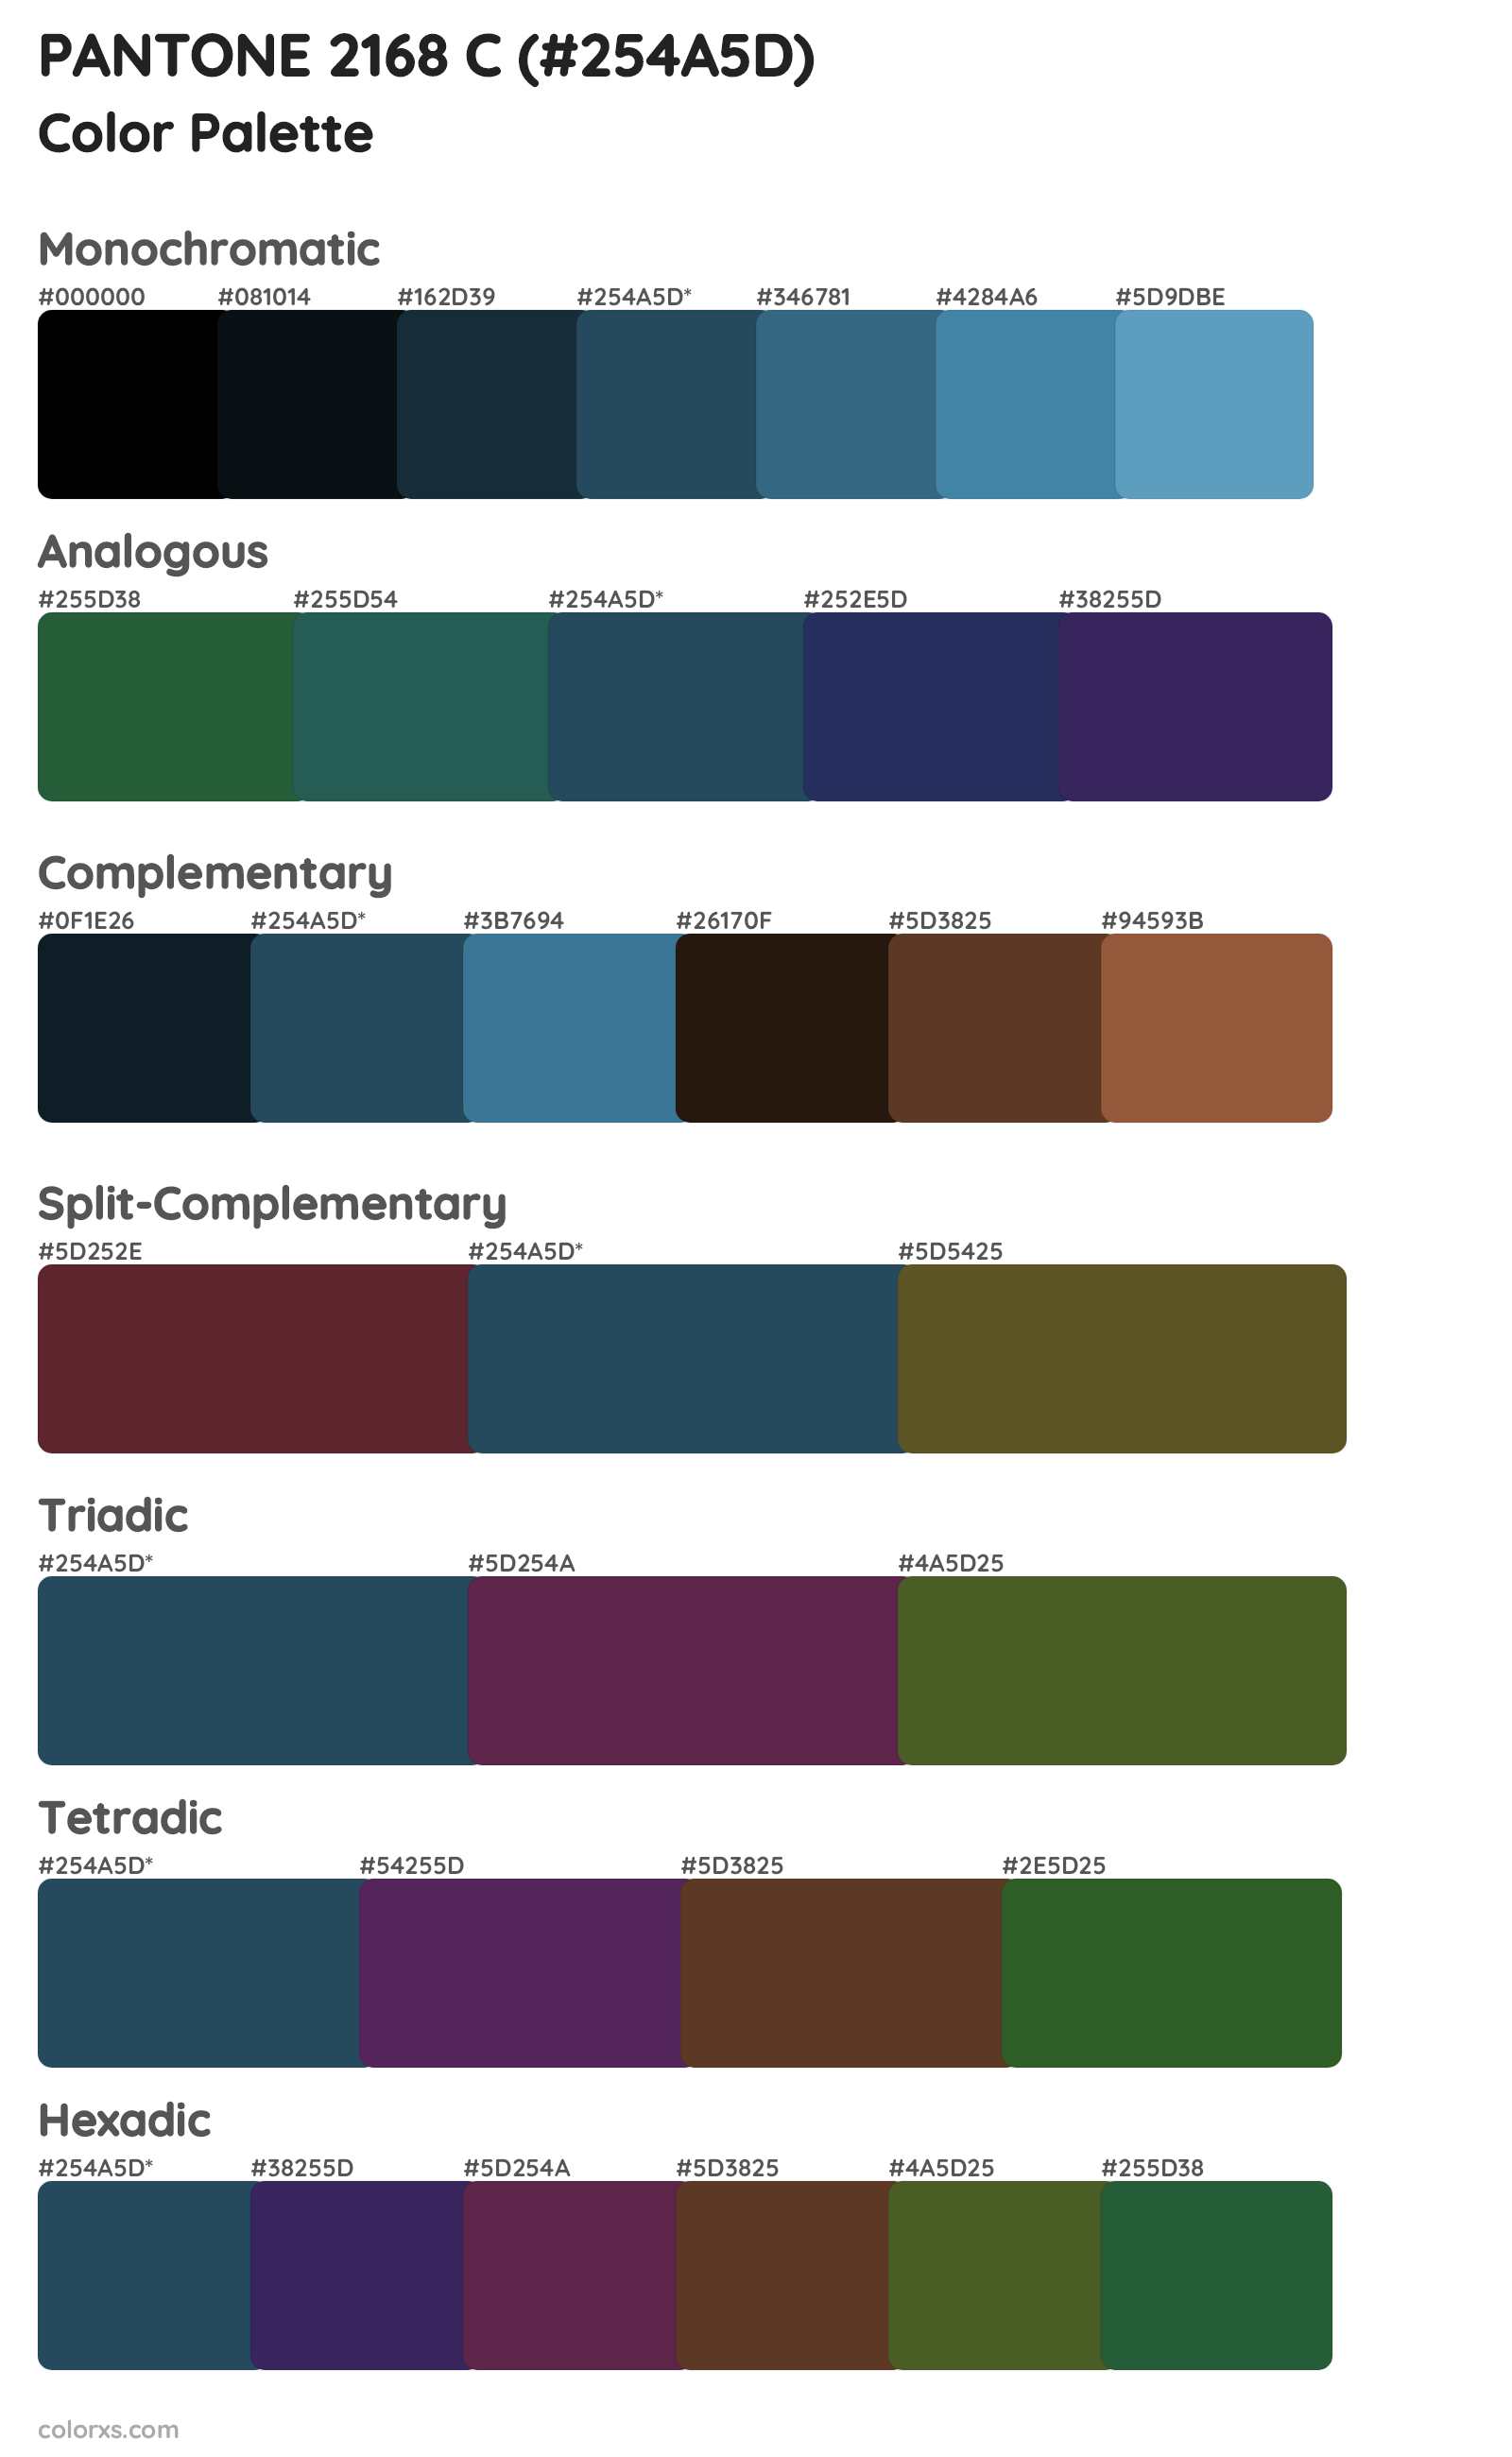 PANTONE 2168 C Color Scheme Palettes